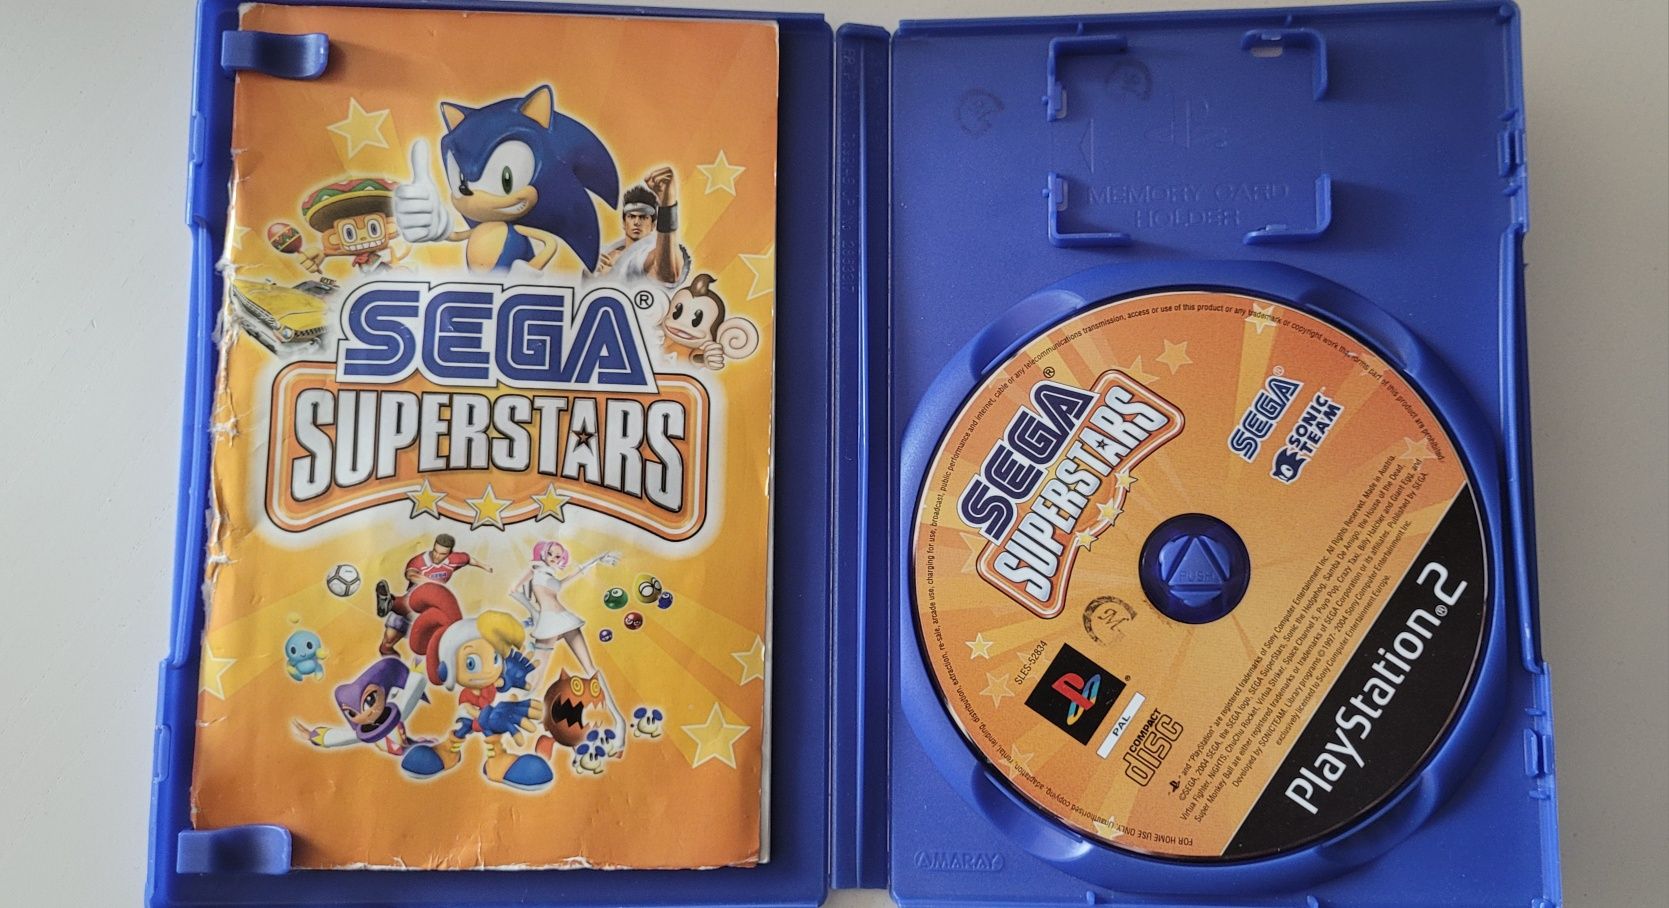 Sega Superstars PS2